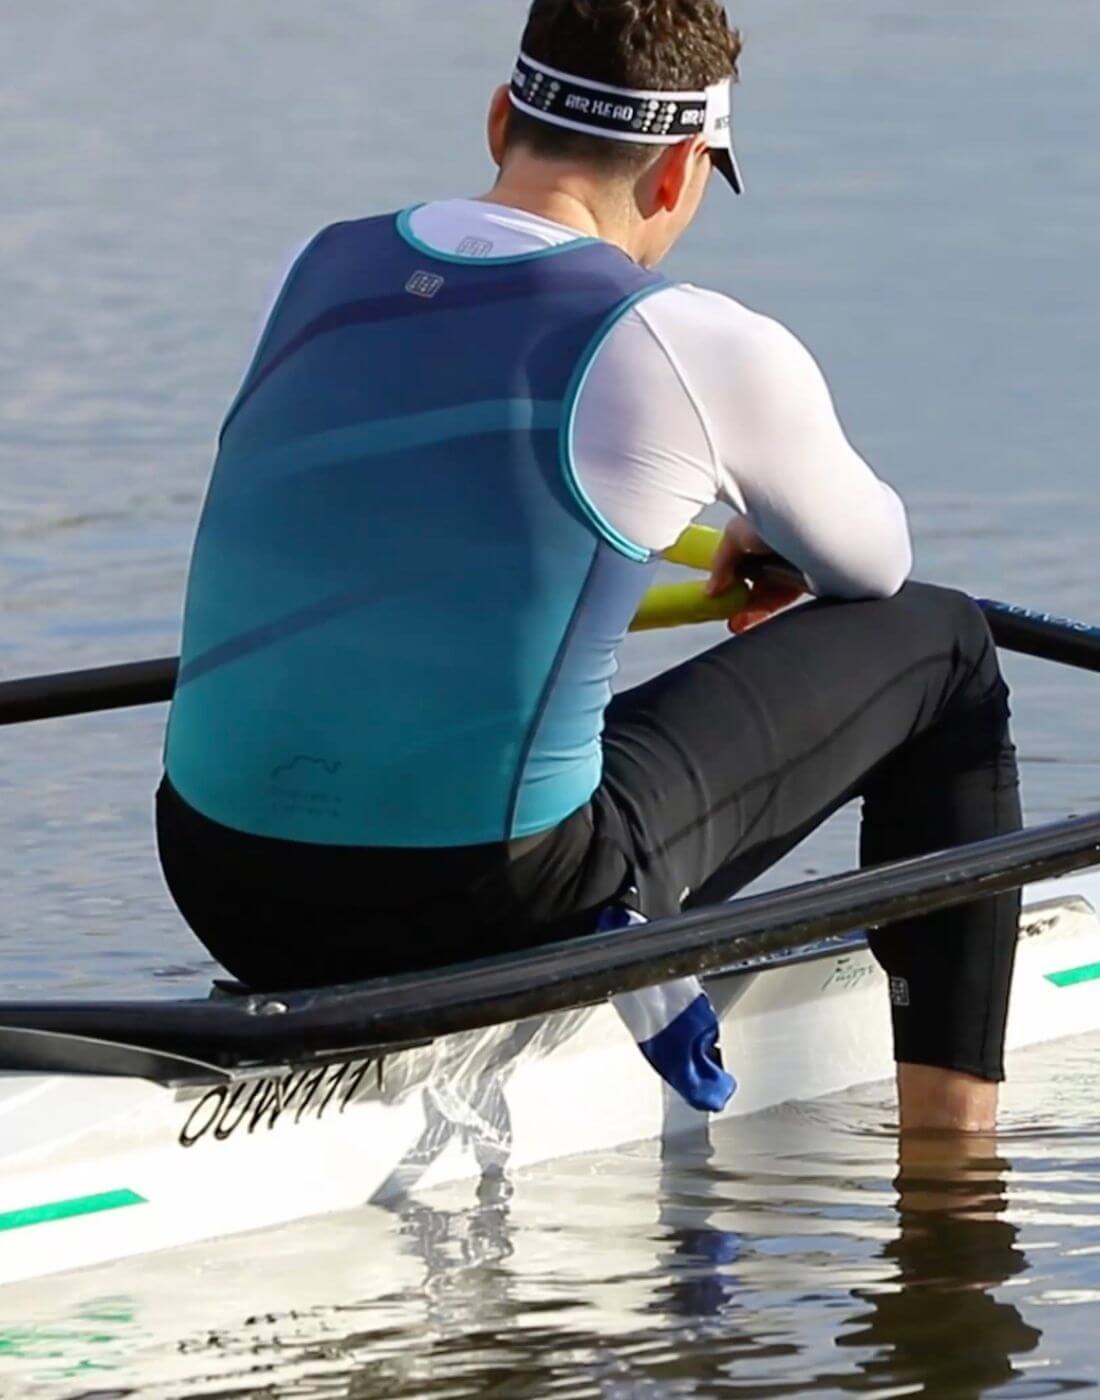 Men's Rowing Kit | Shop Now